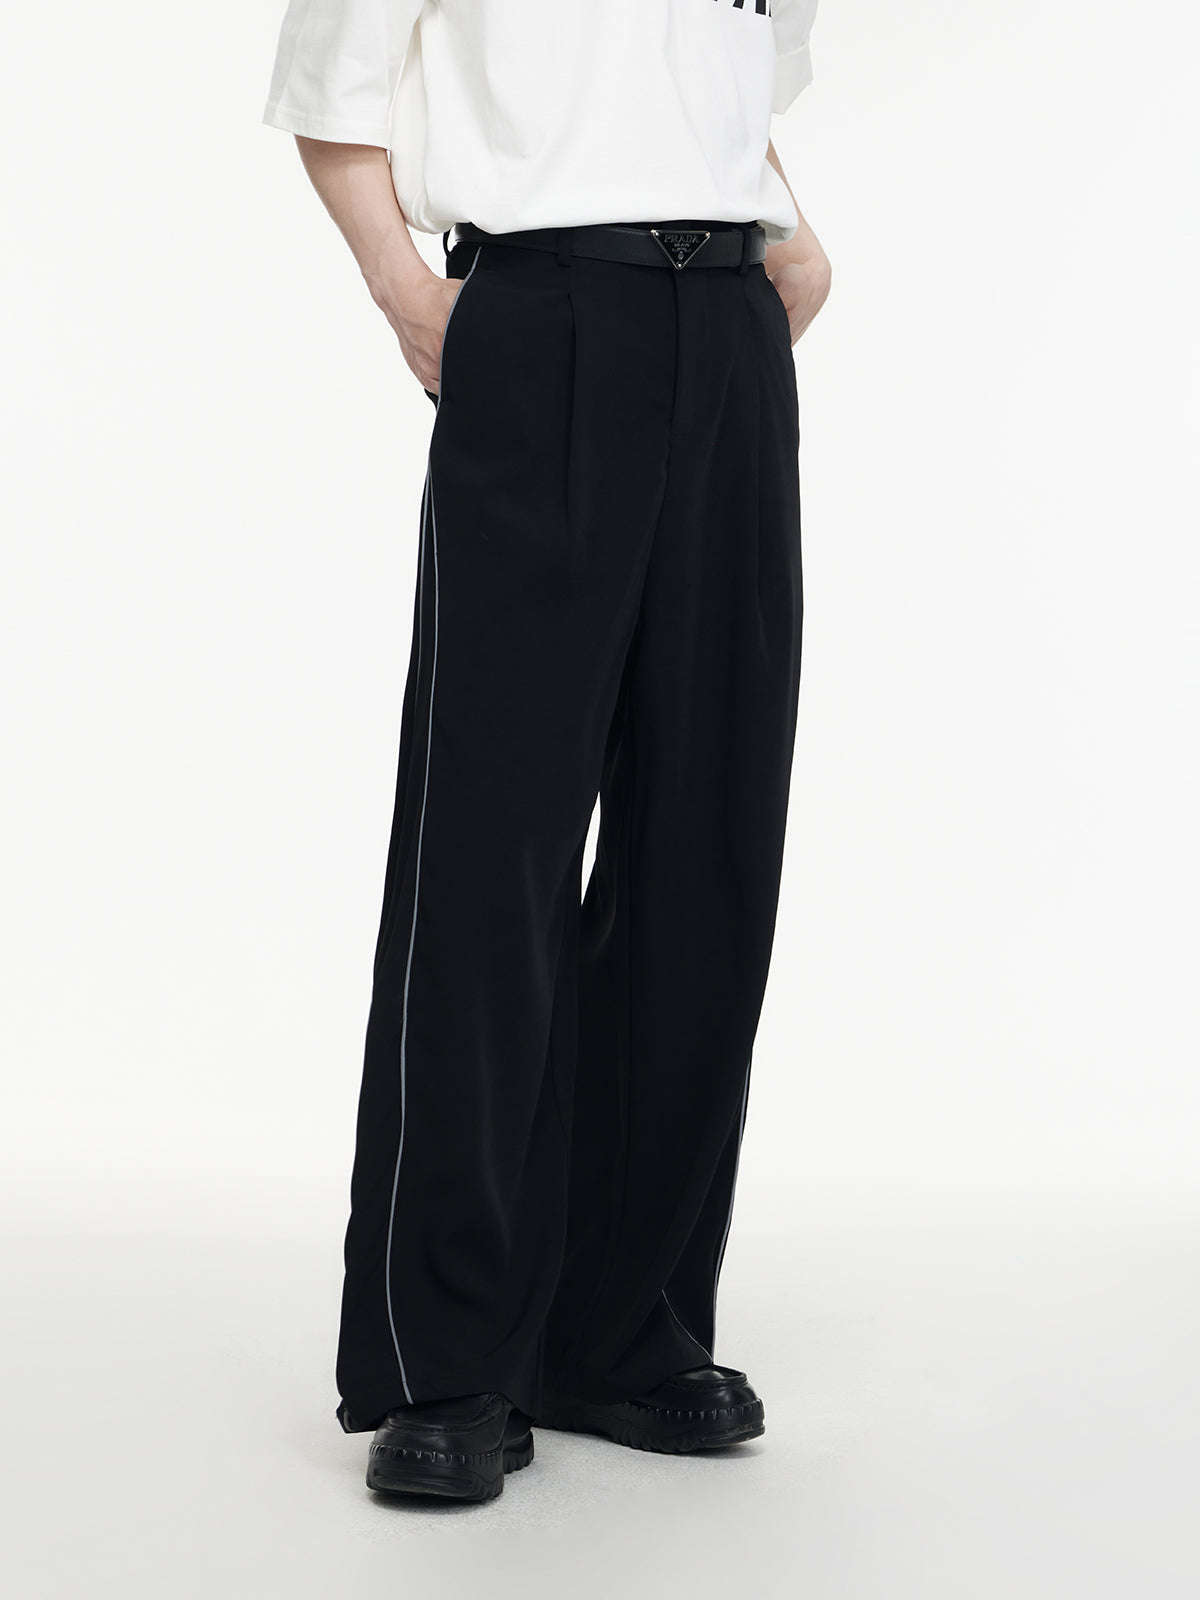 Tuxedo Black Dress Pants VELVET Side Line Mens Slacks Trouser Flat Front By  AZAR | eBay